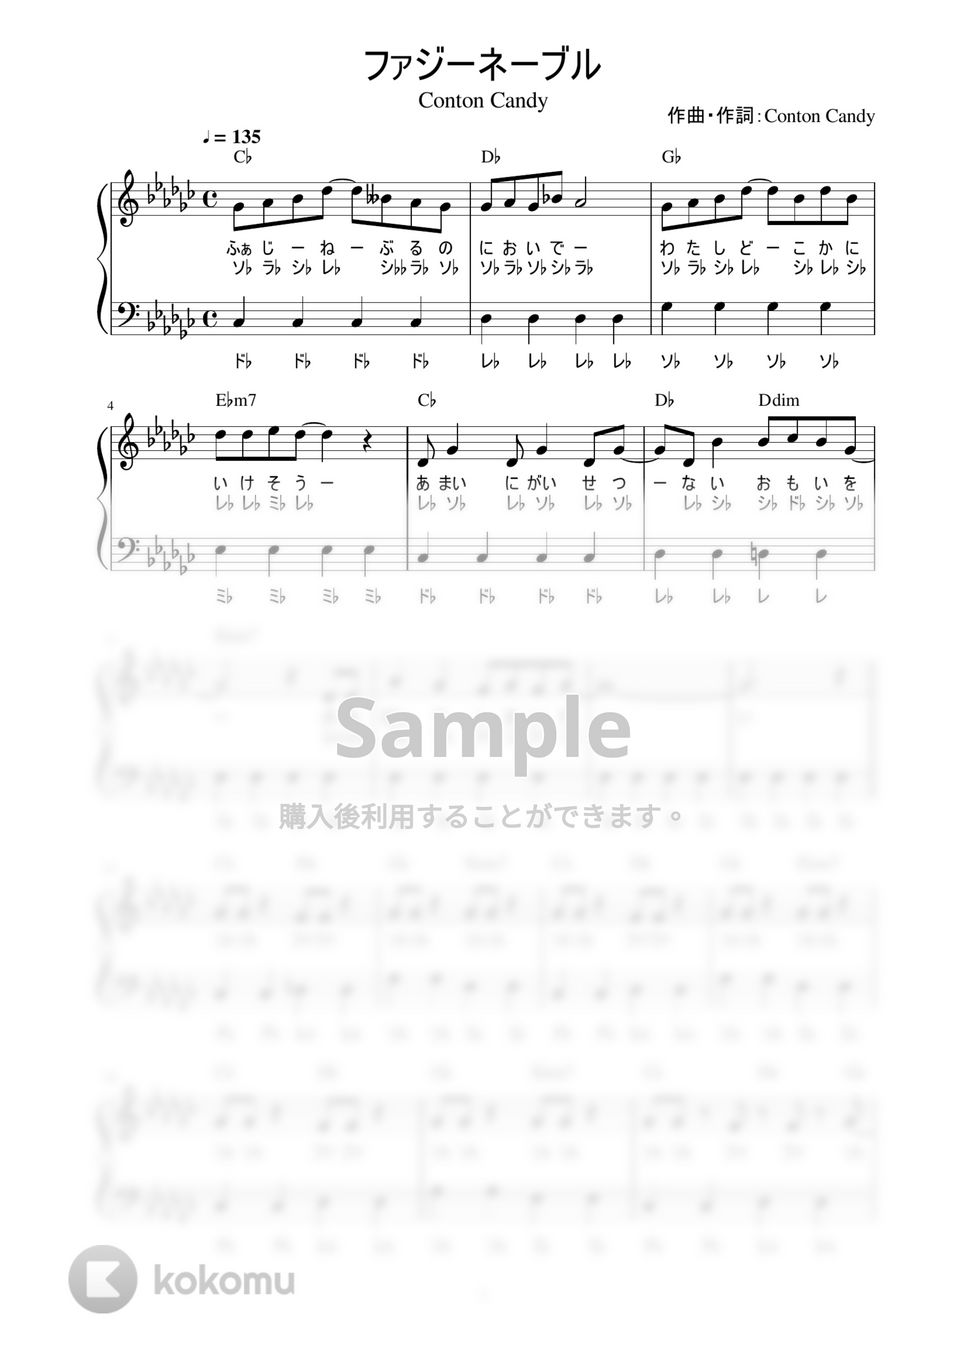 Conton Candy - ファジーネーブル (かんたん / 歌詞付き / ドレミ付き / 初心者) by piano.tokyo